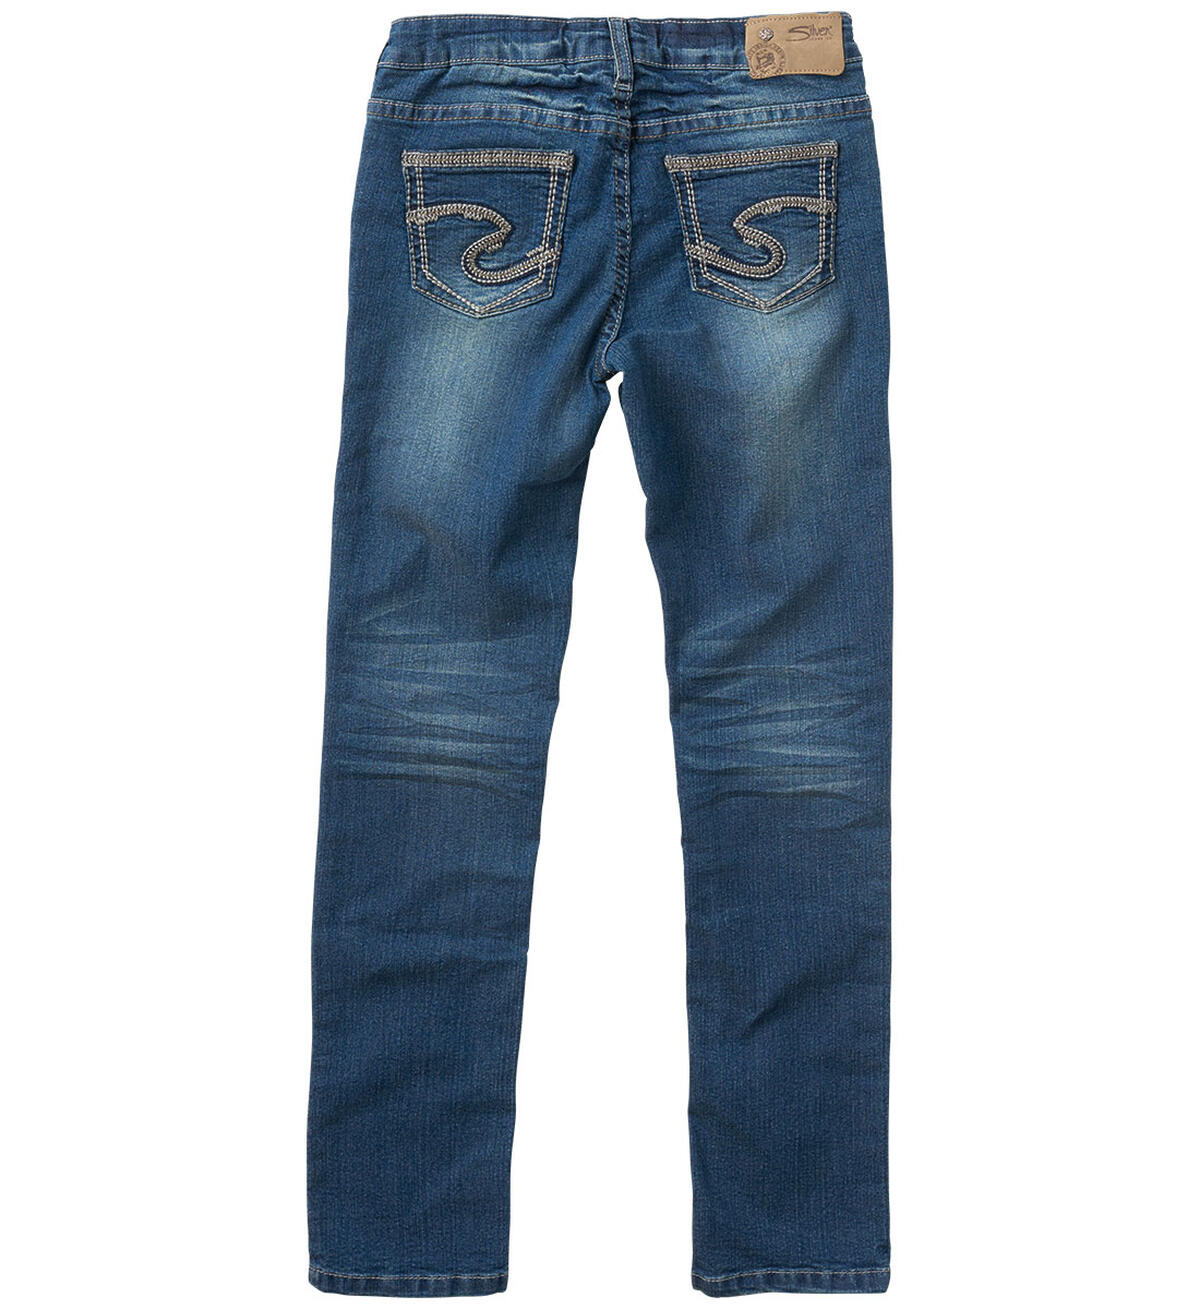 Sasha Skinny Jeans in Medium Wash (7-16), , hi-res image number 1